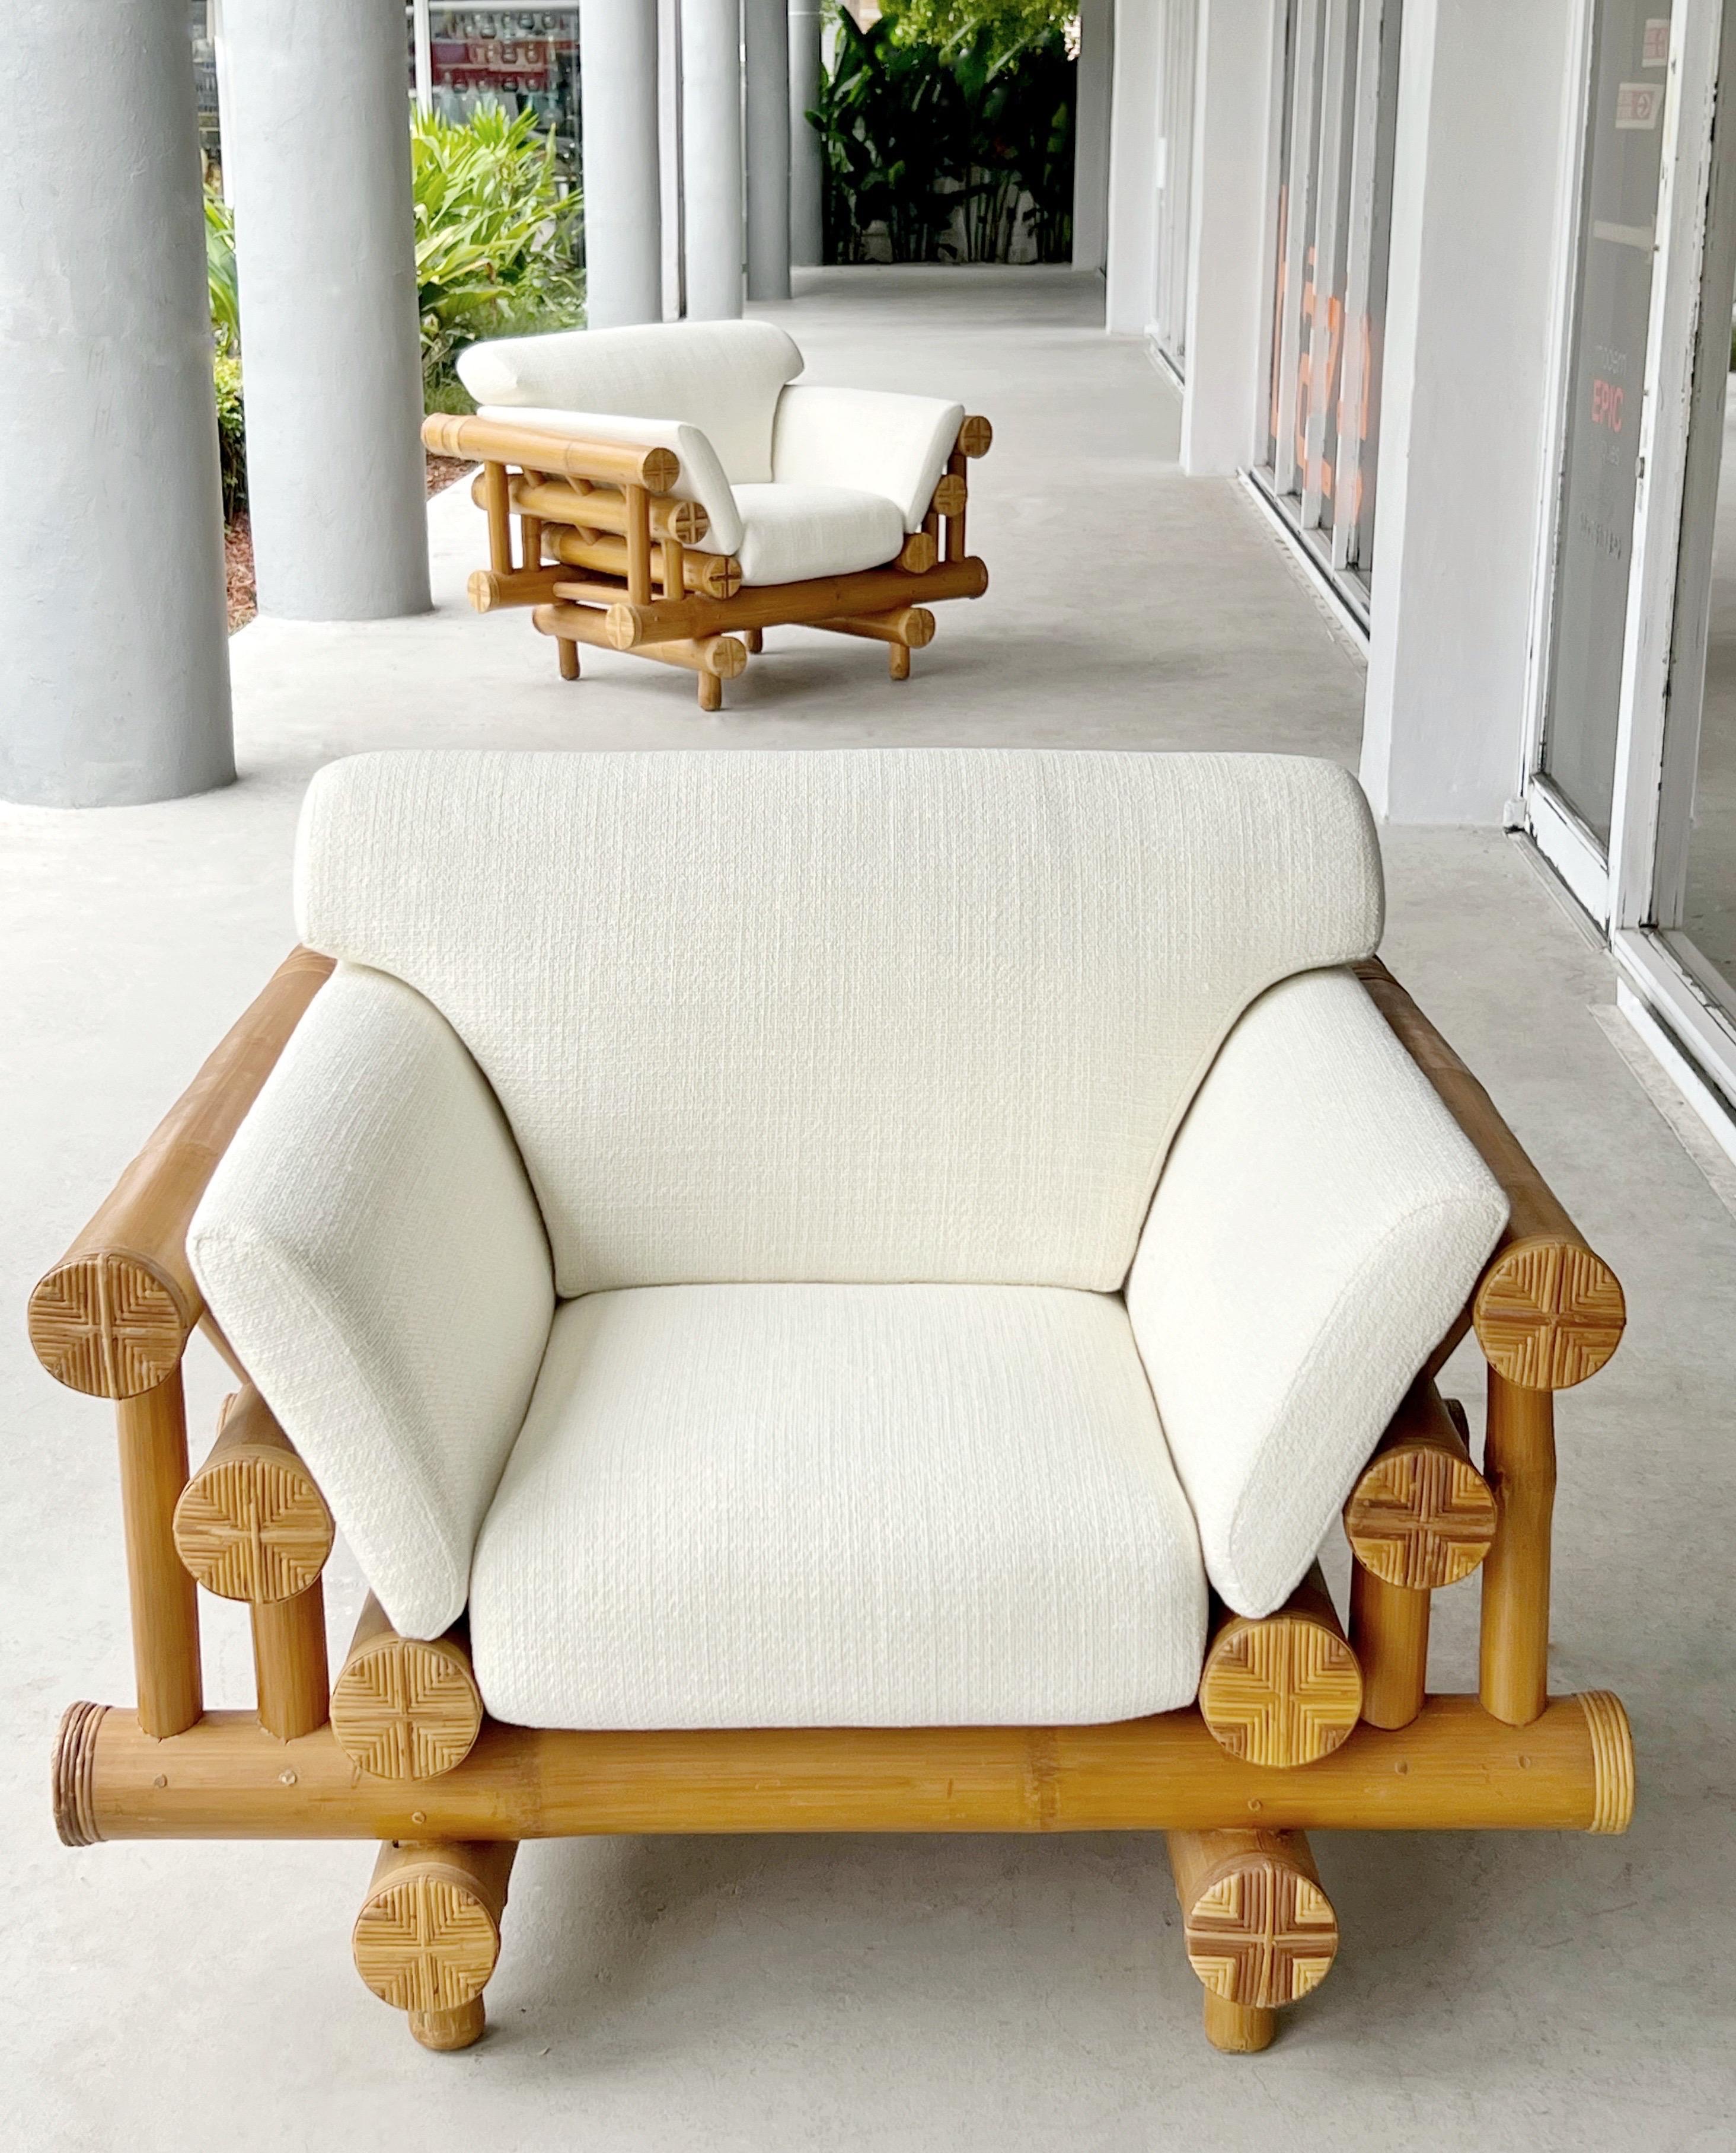 Ein Paar Loungesessel aus Bambus aus den 1970er Jahren. Modernes Konzept für ein zeitloses und edles MATERIAL. Sofa auch verfügbar.
